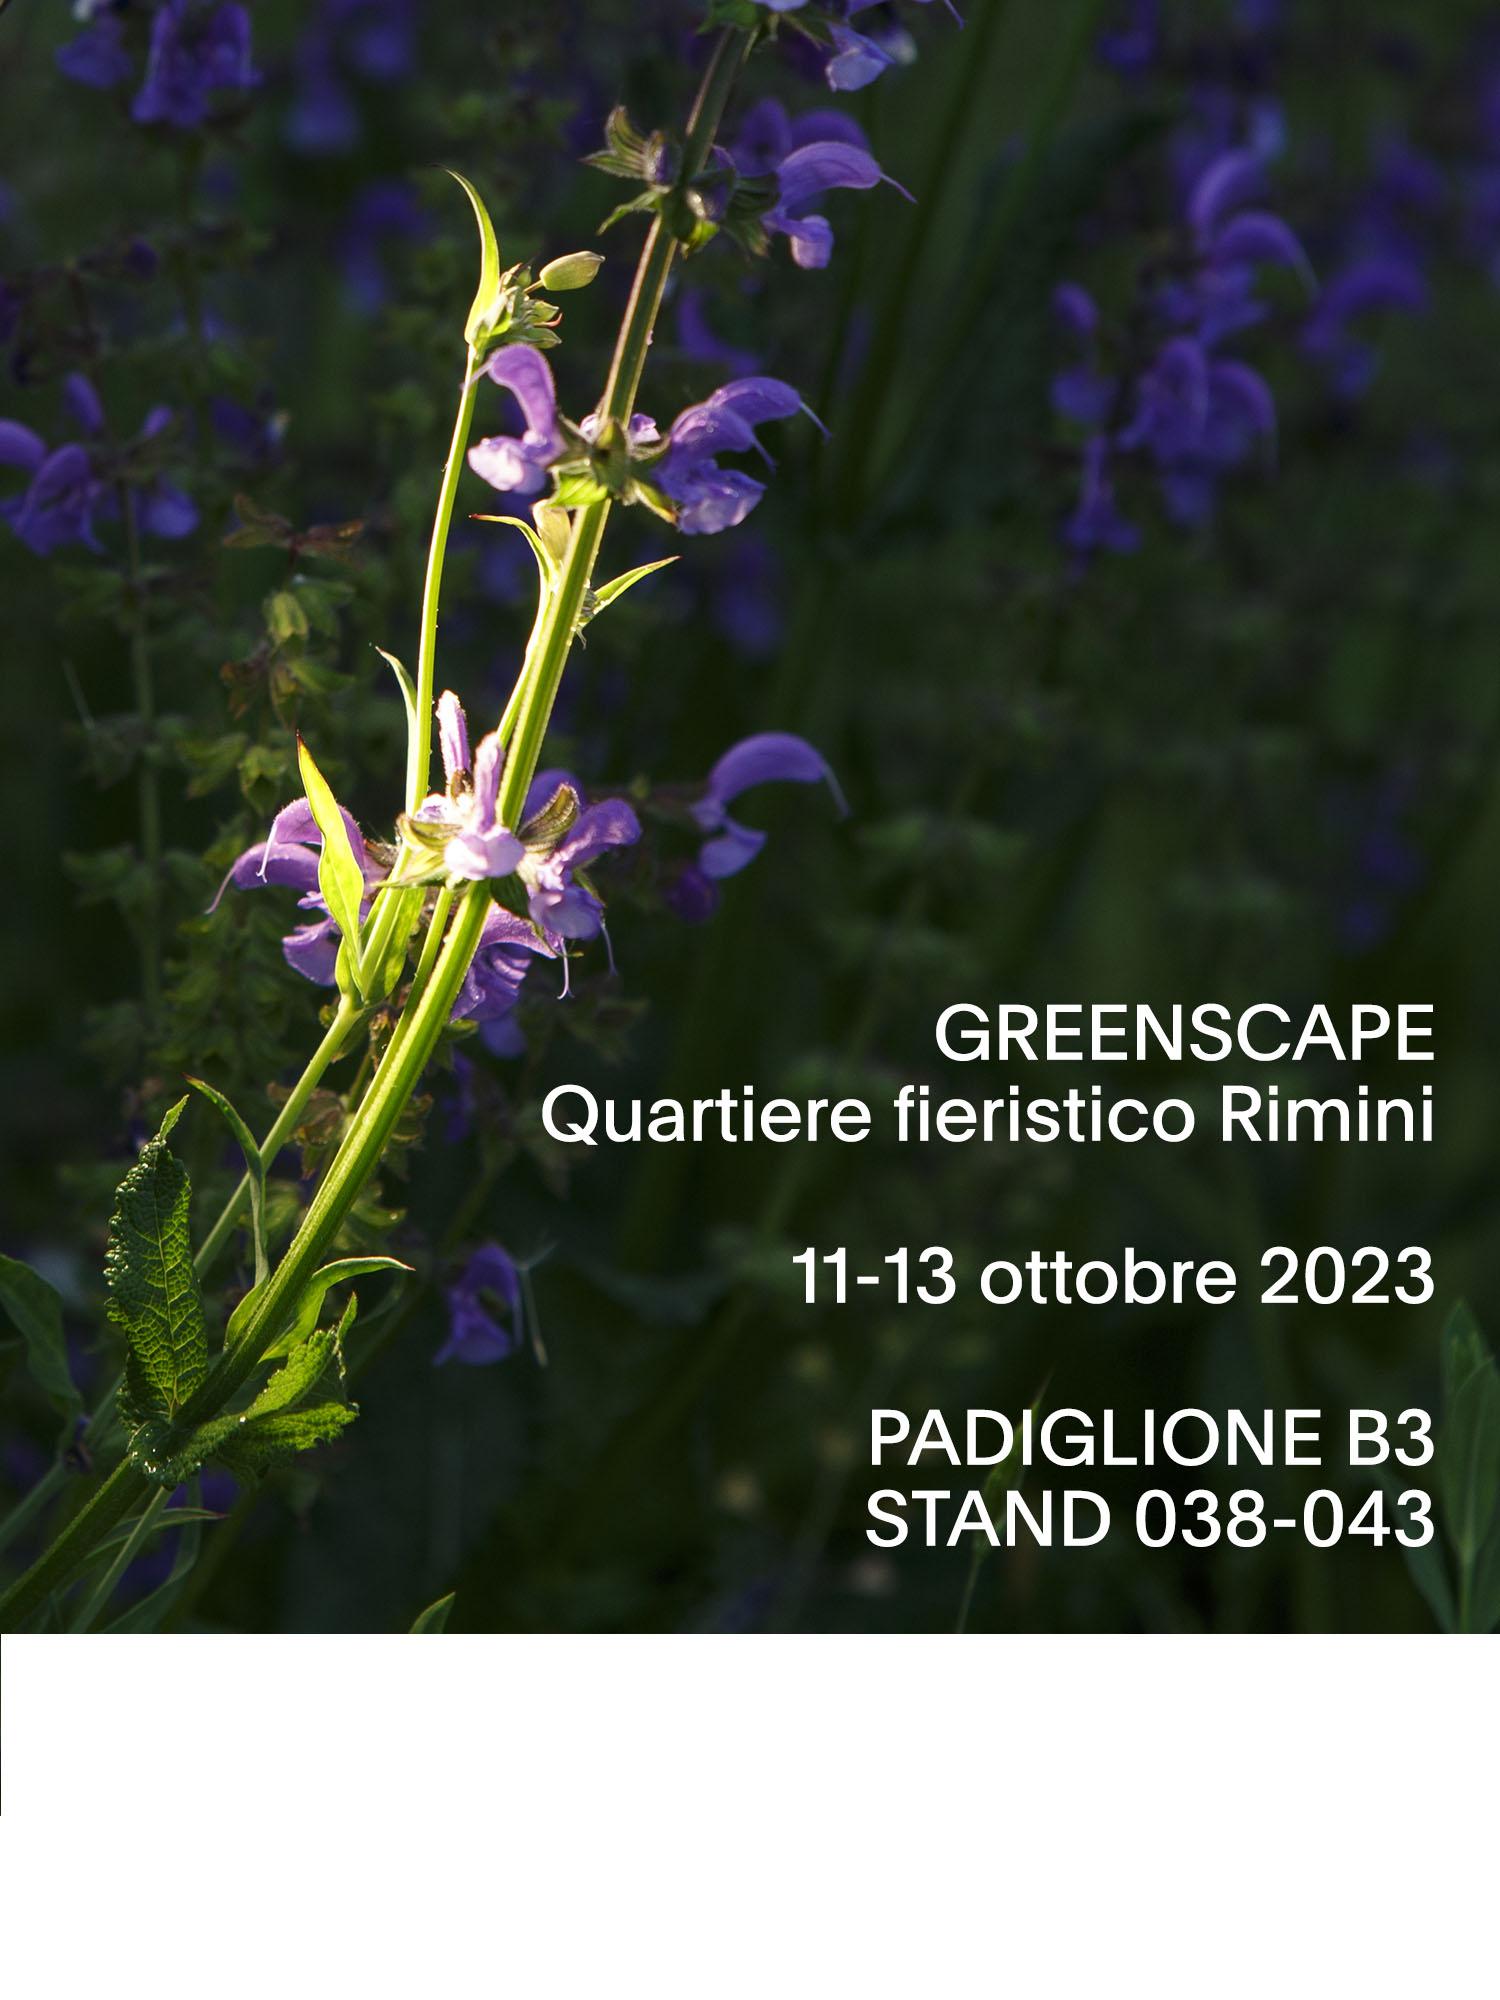 STRAL ai Lab Greenscape - InOut Rimini: 
&ldquo;Scorci Visivi&rdquo; 
la Natura protagonista nella quotidianit&agrave; dell&rsquo;Uomo
&nbsp;
&nbsp;